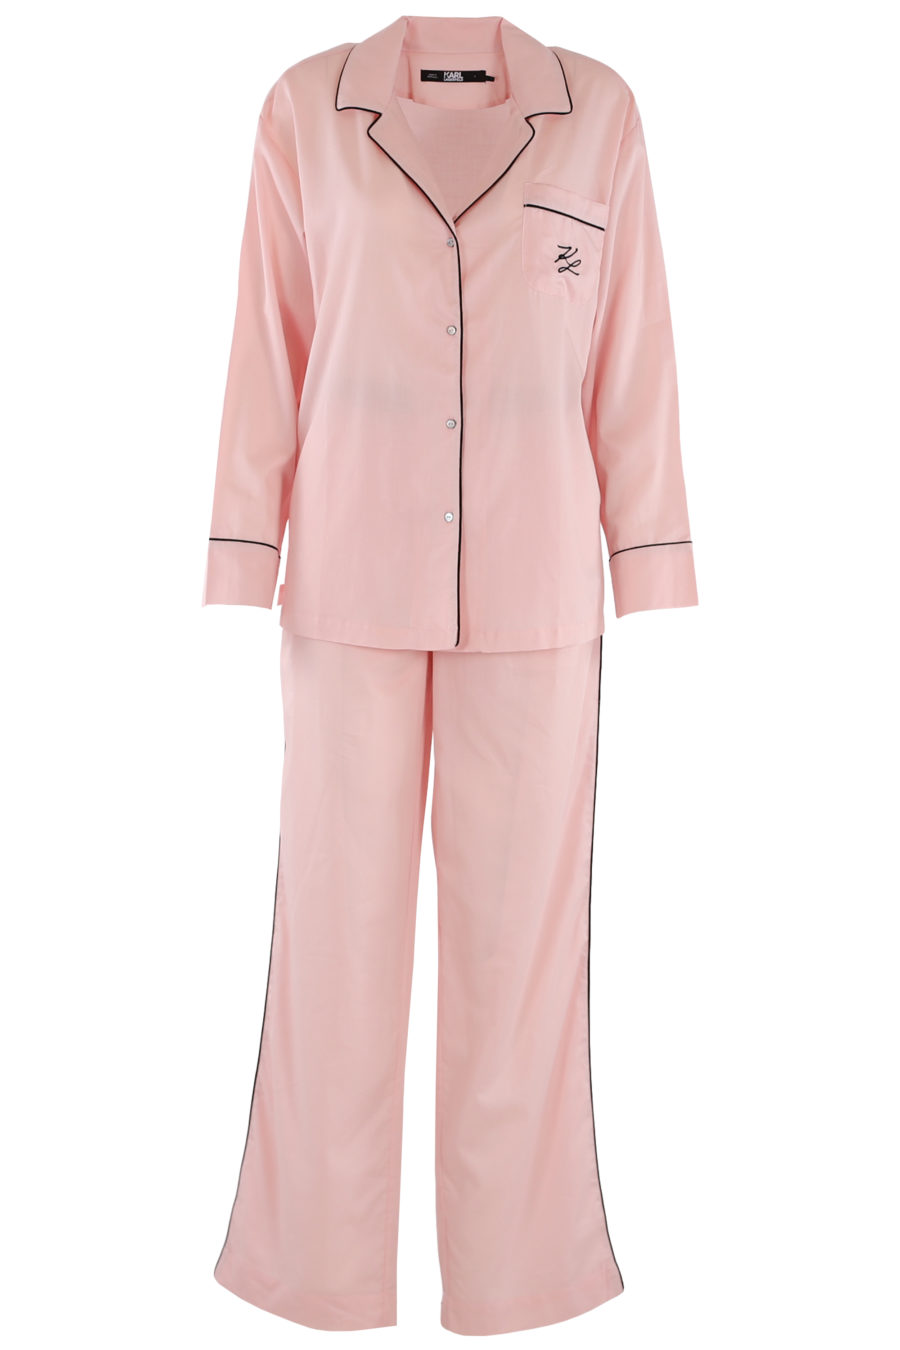 Rosa Pyjama-Set - 7ebe7bfc1a9aaf71a0a18432dc474d00534d225b